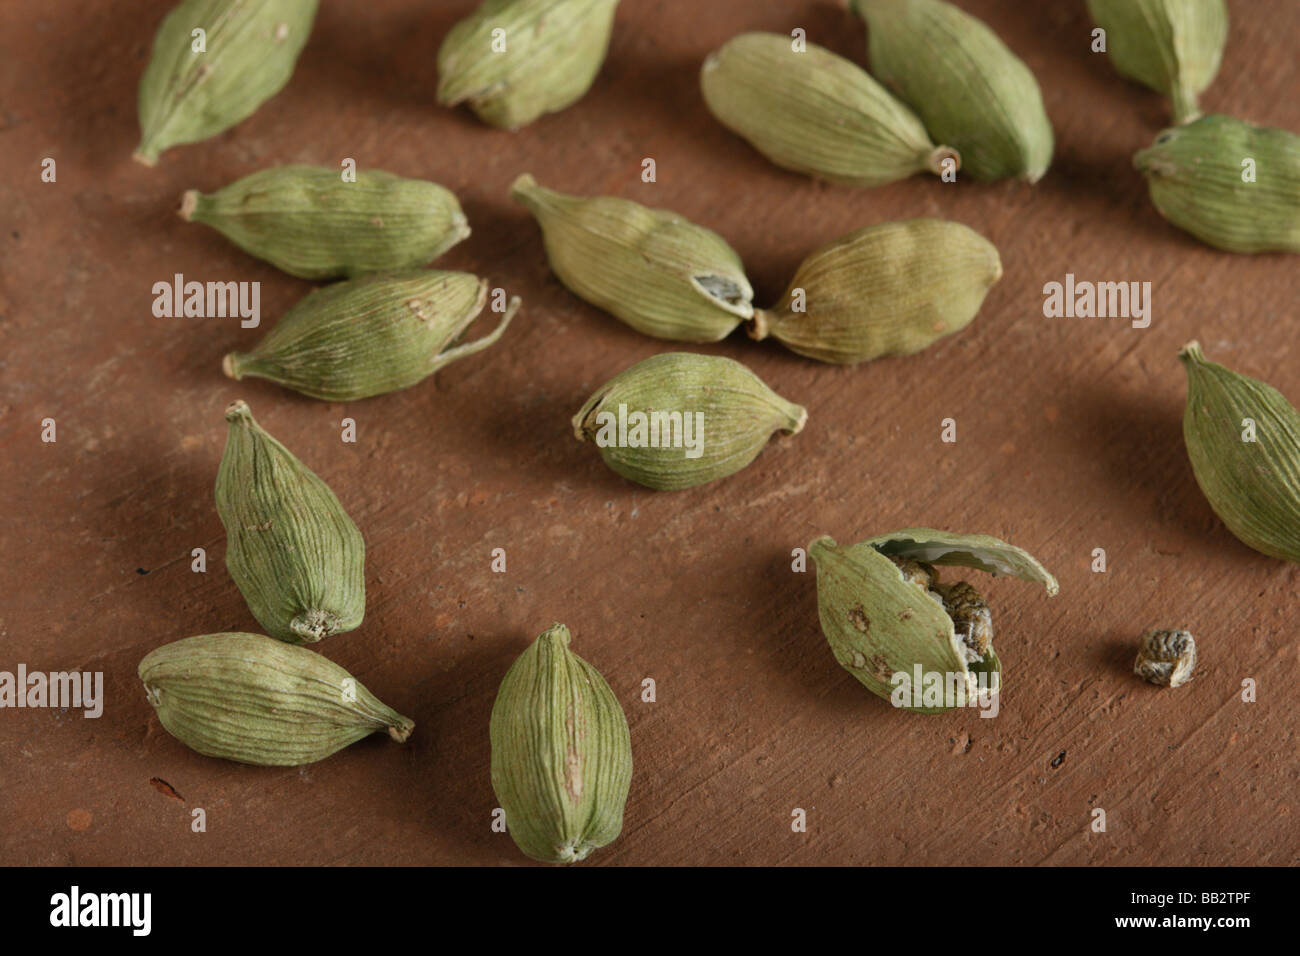 La cardamome verte est une épice indienne populaire avec de nombreux usages Banque D'Images